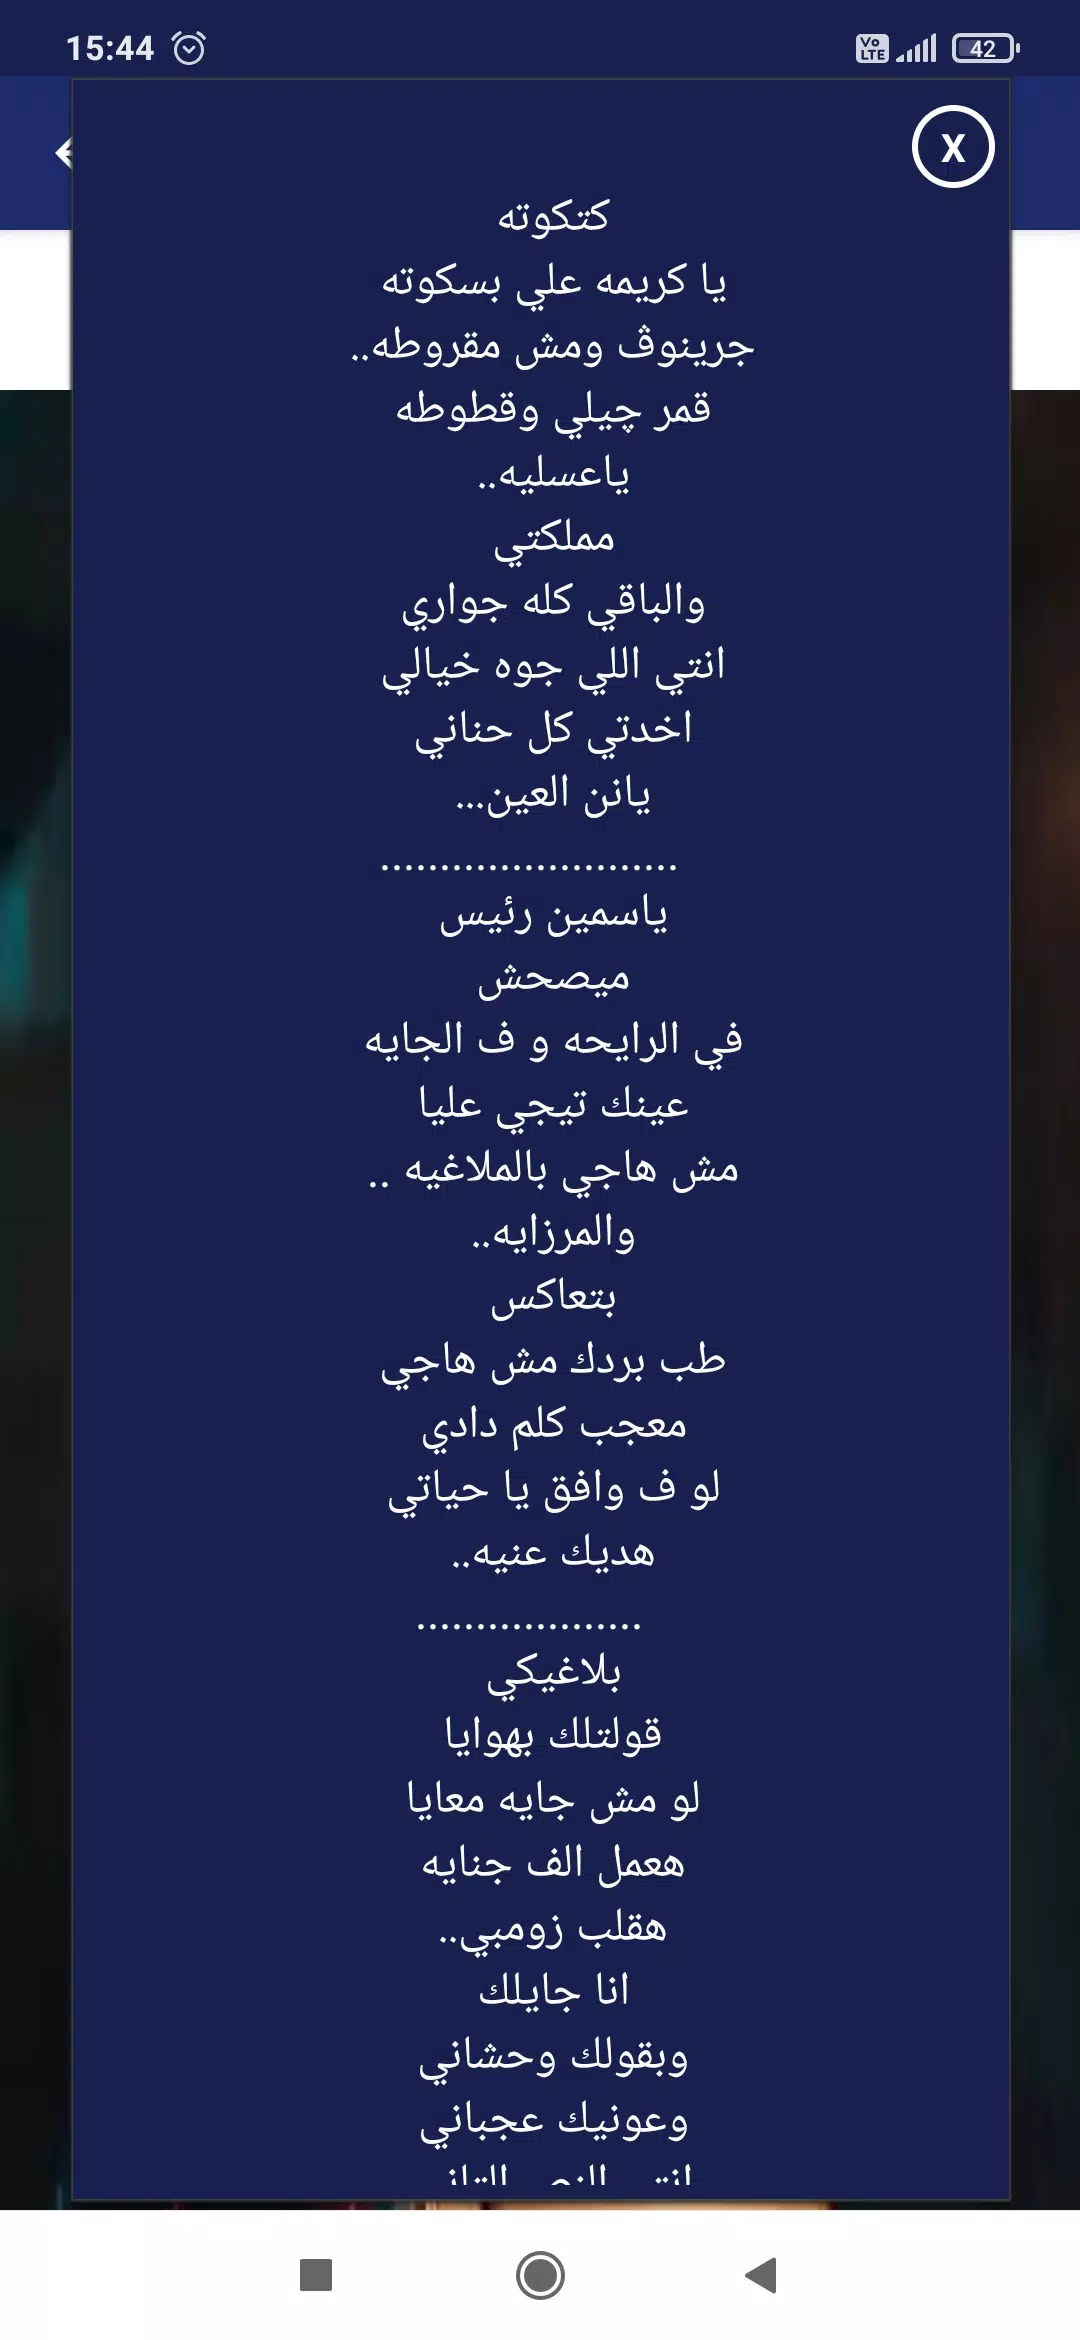 مهرجان حبيبتي افتحي شباكك انا جيت - حسن شاكوش APK for Android Download